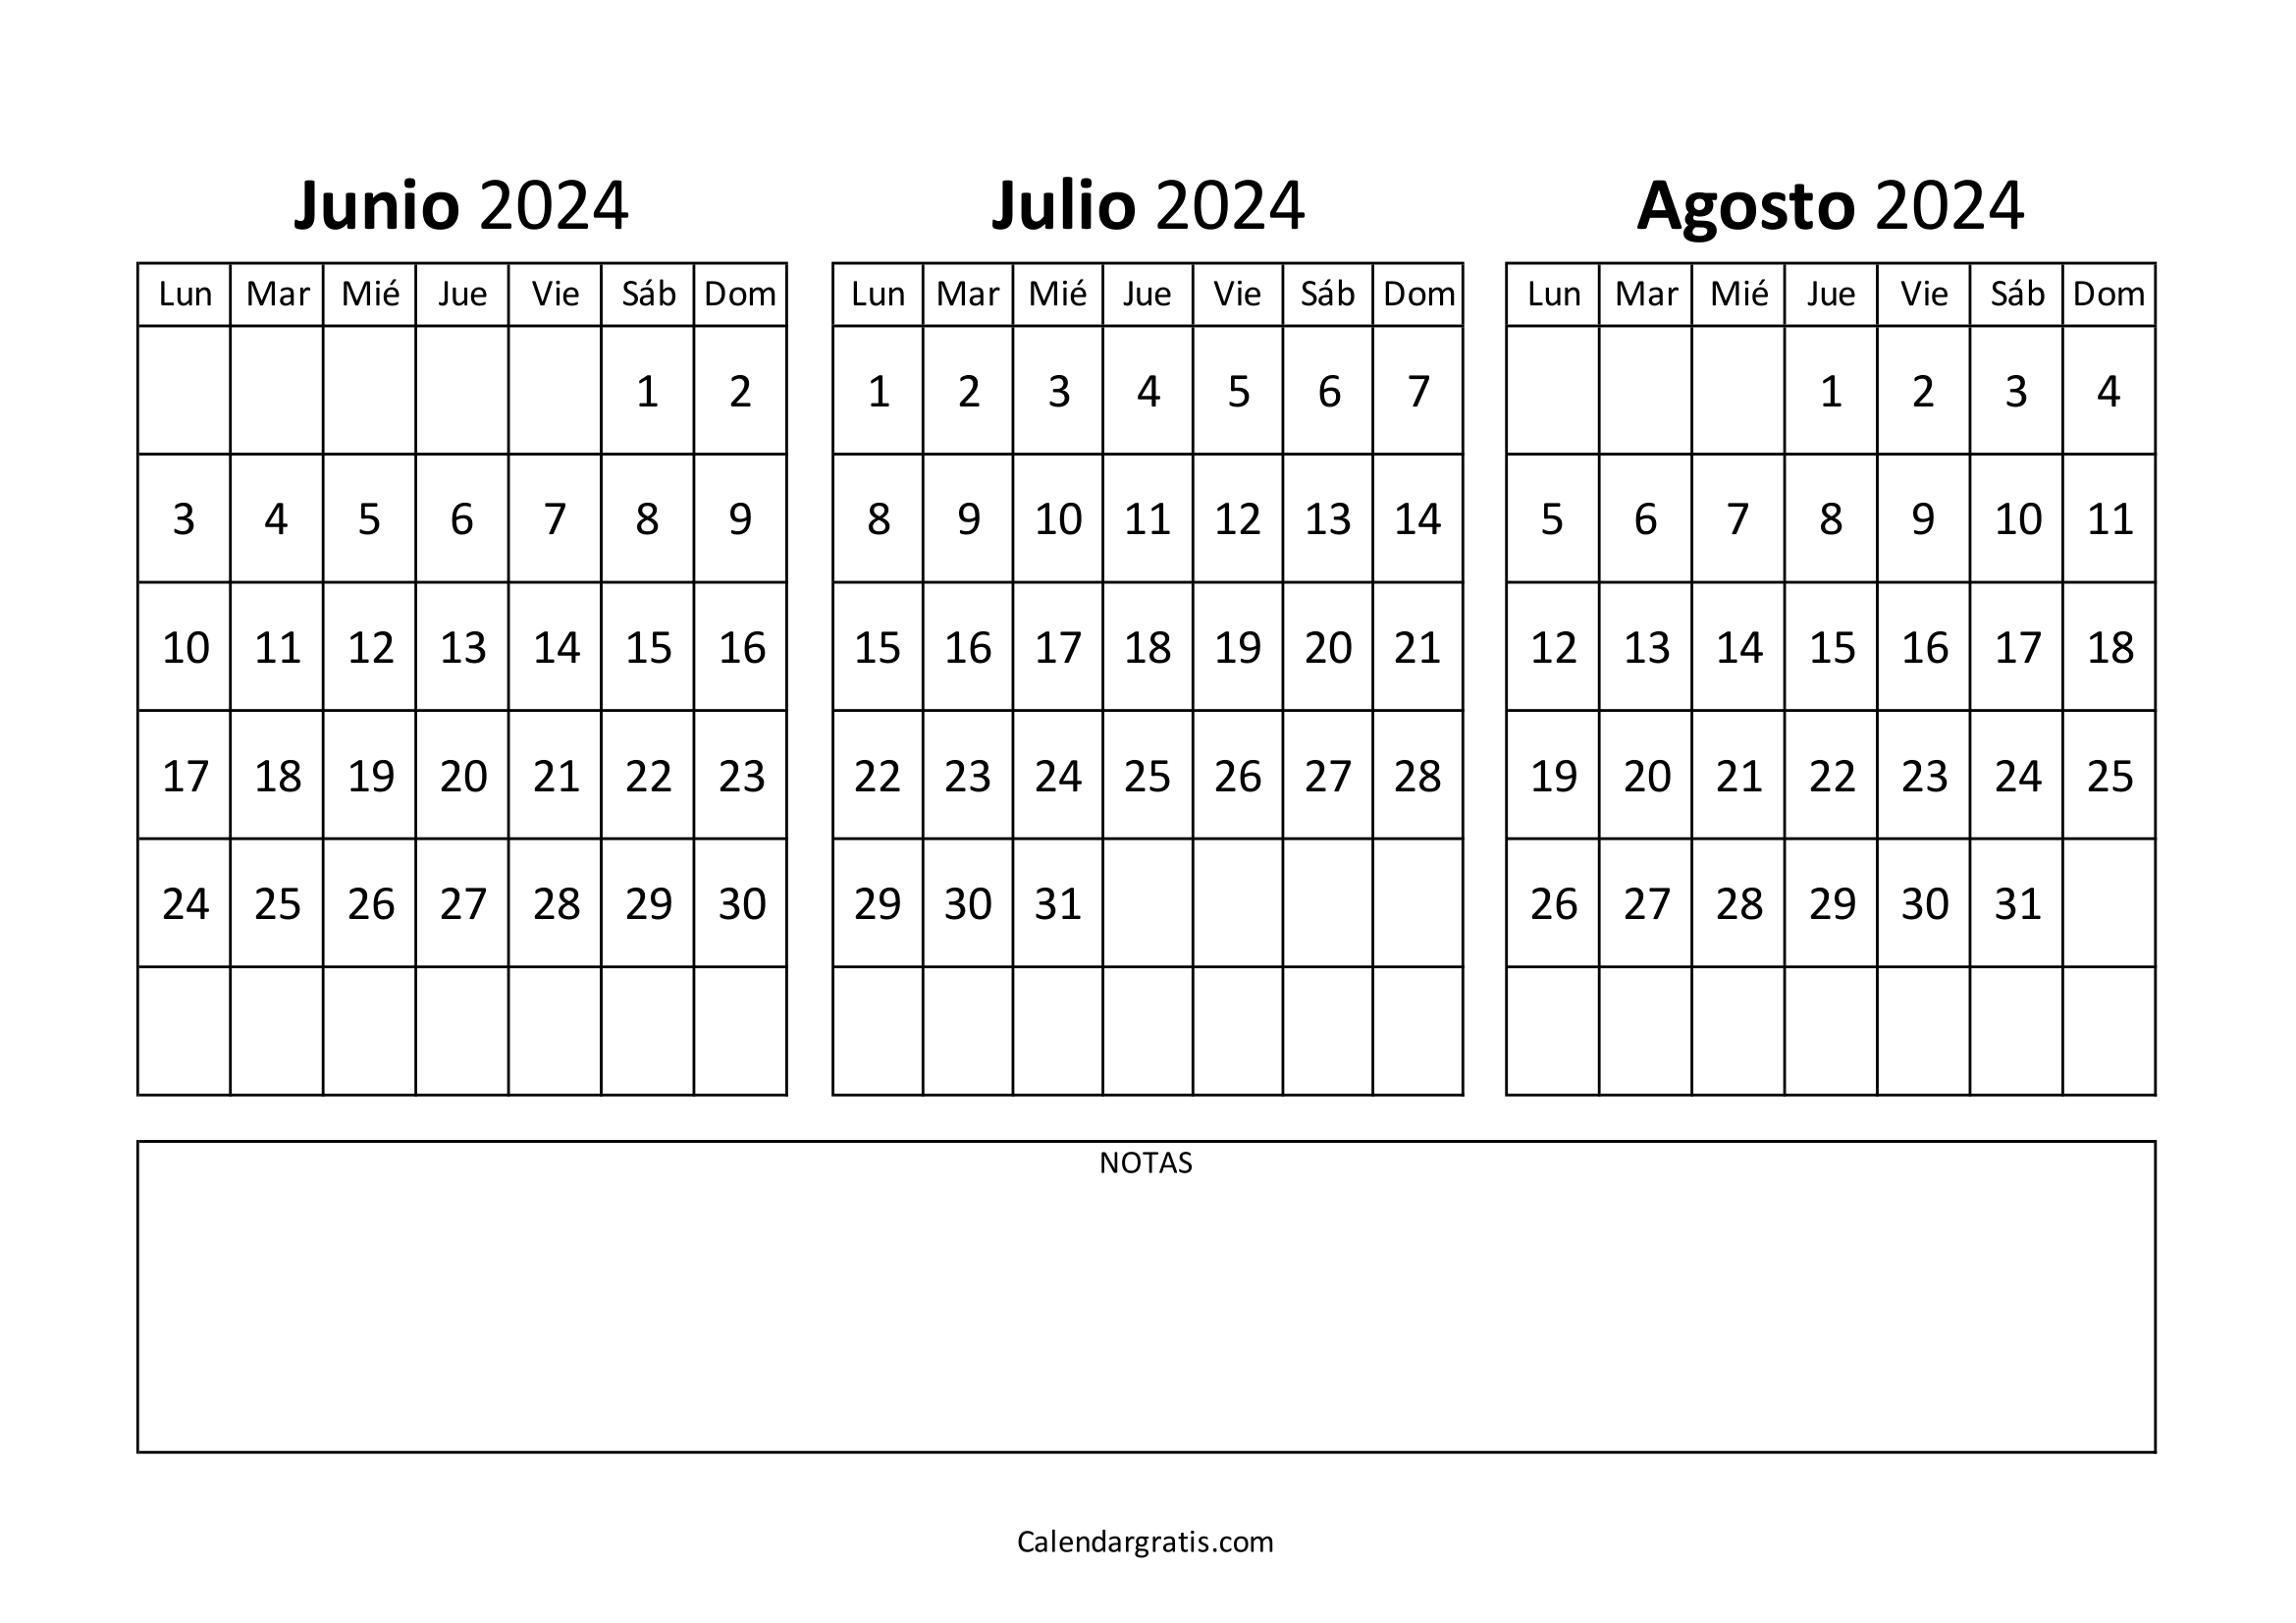 Calendario junio julio y agosto 2024